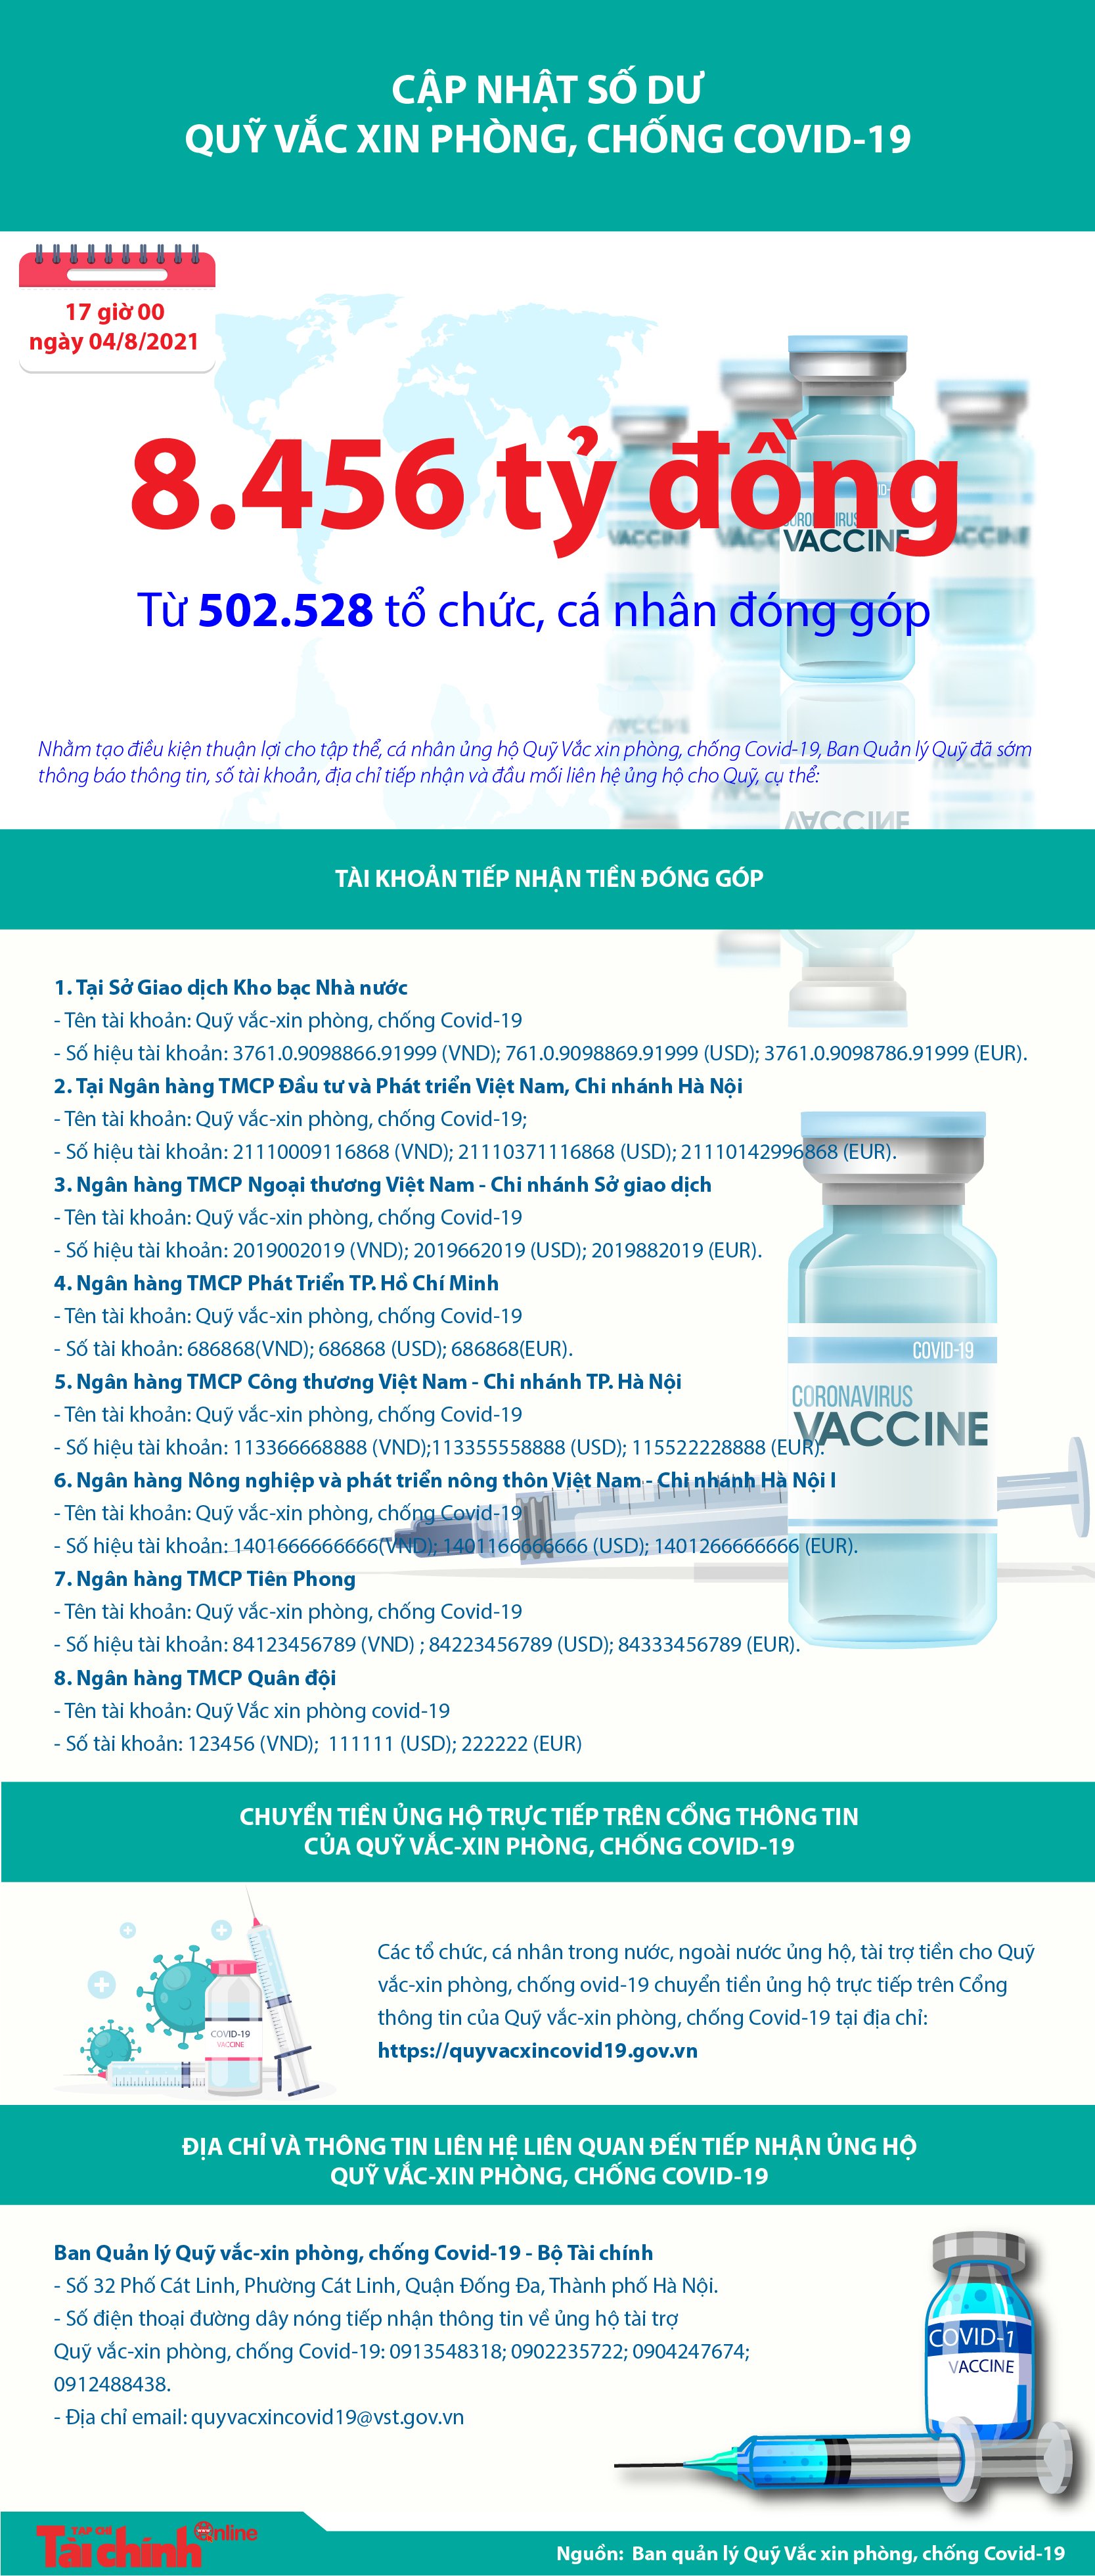 [Infographics] Quỹ Vắc xin phòng, chống COVID-19 đã tiếp nhận ủng hộ 8.456 tỷ đồng - Ảnh 1